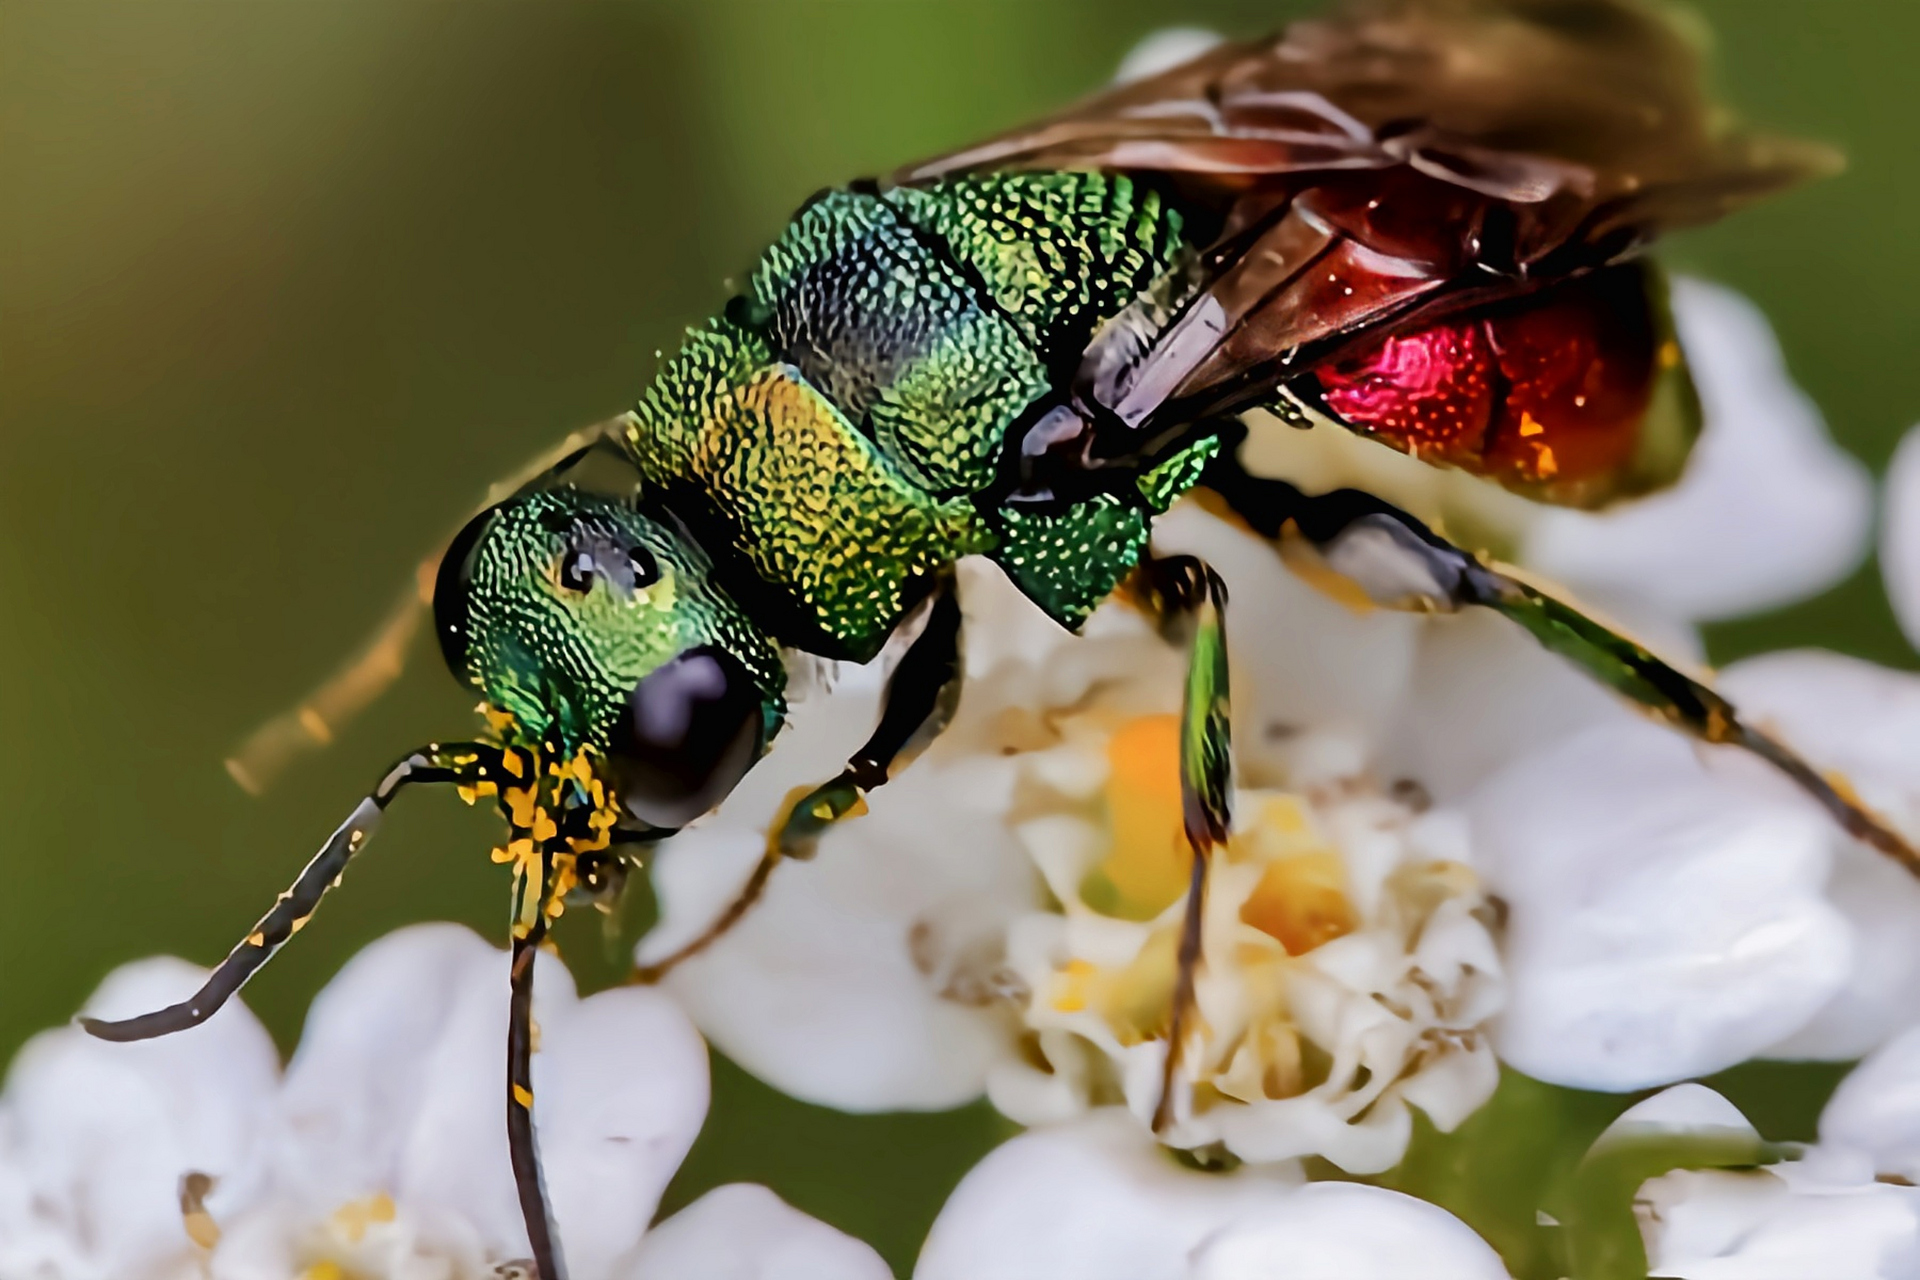 每天认识一种昆虫——杜鹃黄蜂  杜鹃黄蜂又名黄金黄蜂,红宝石黄蜂,紫